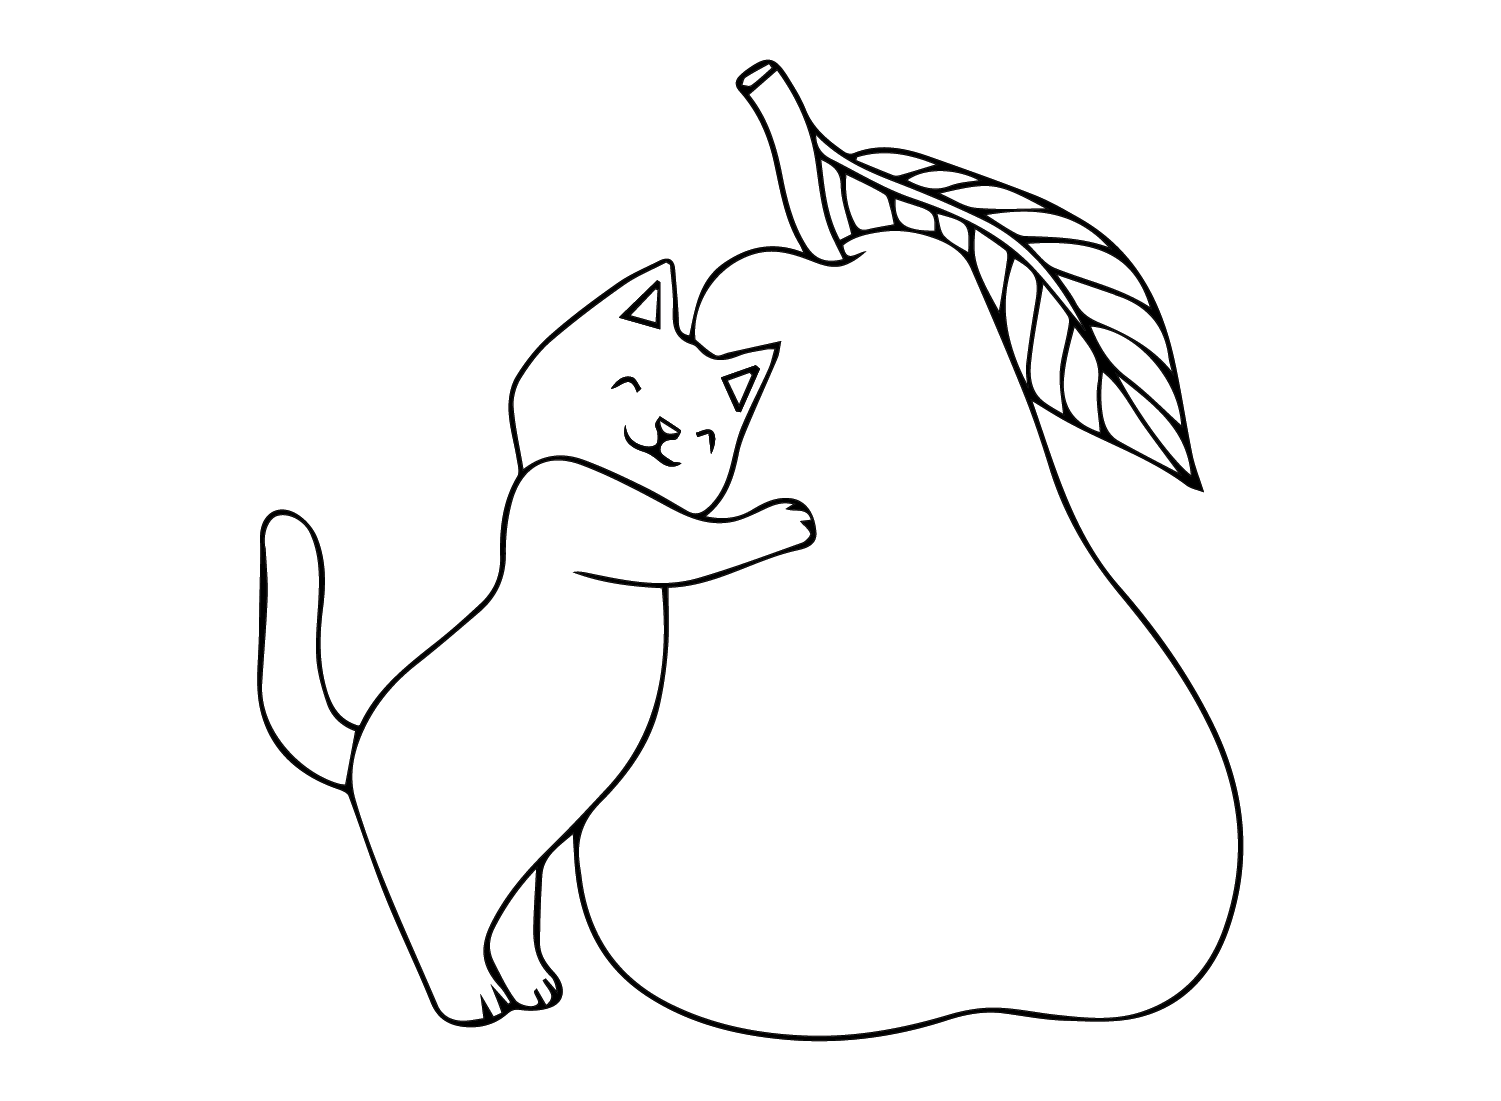 梨和梨中的猫